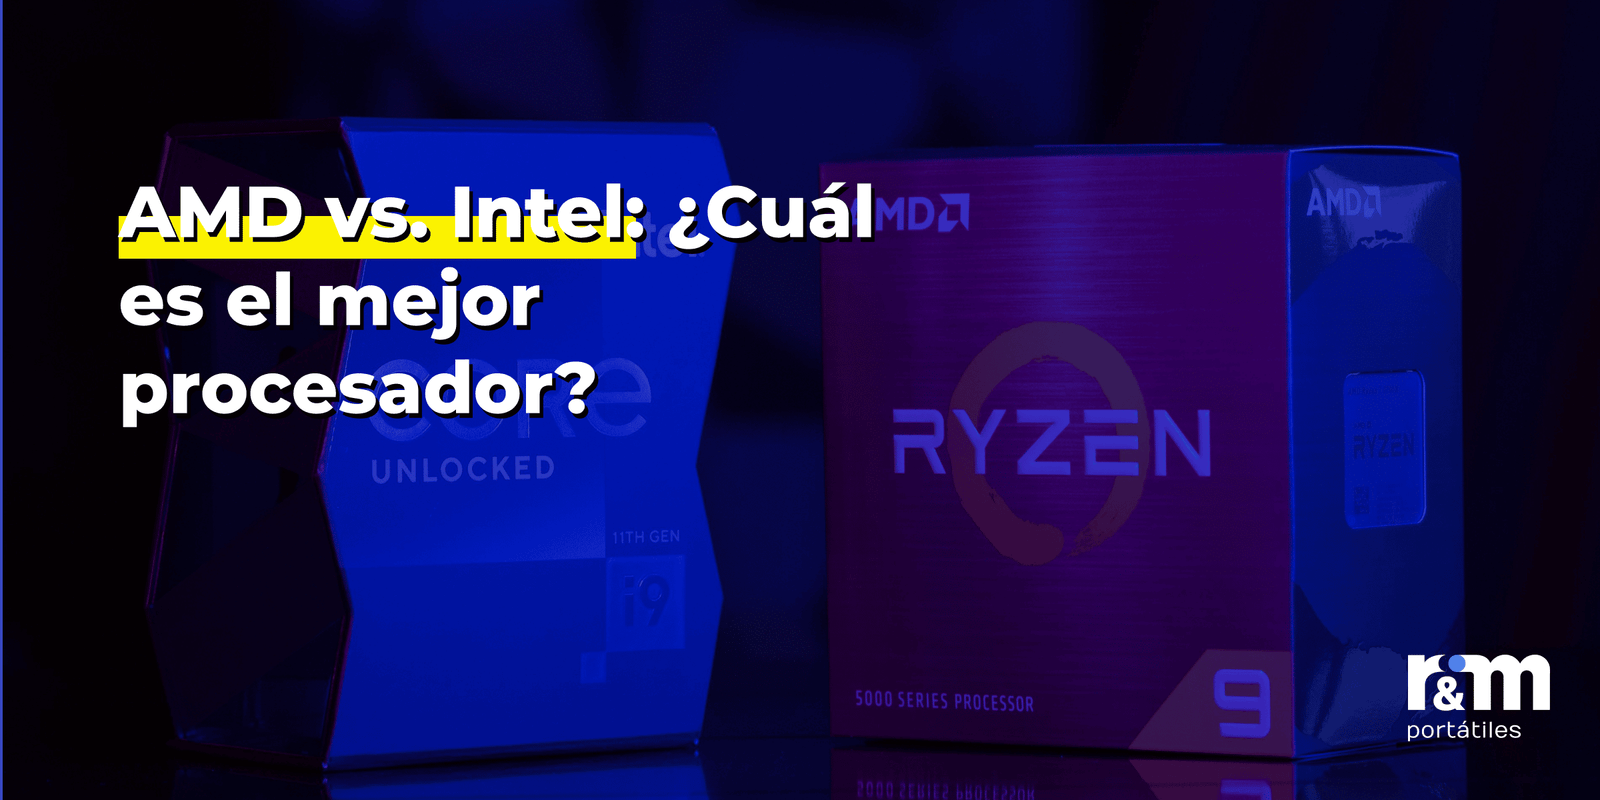 AMD vs. Intel: ¿Cuál es el mejor procesador?